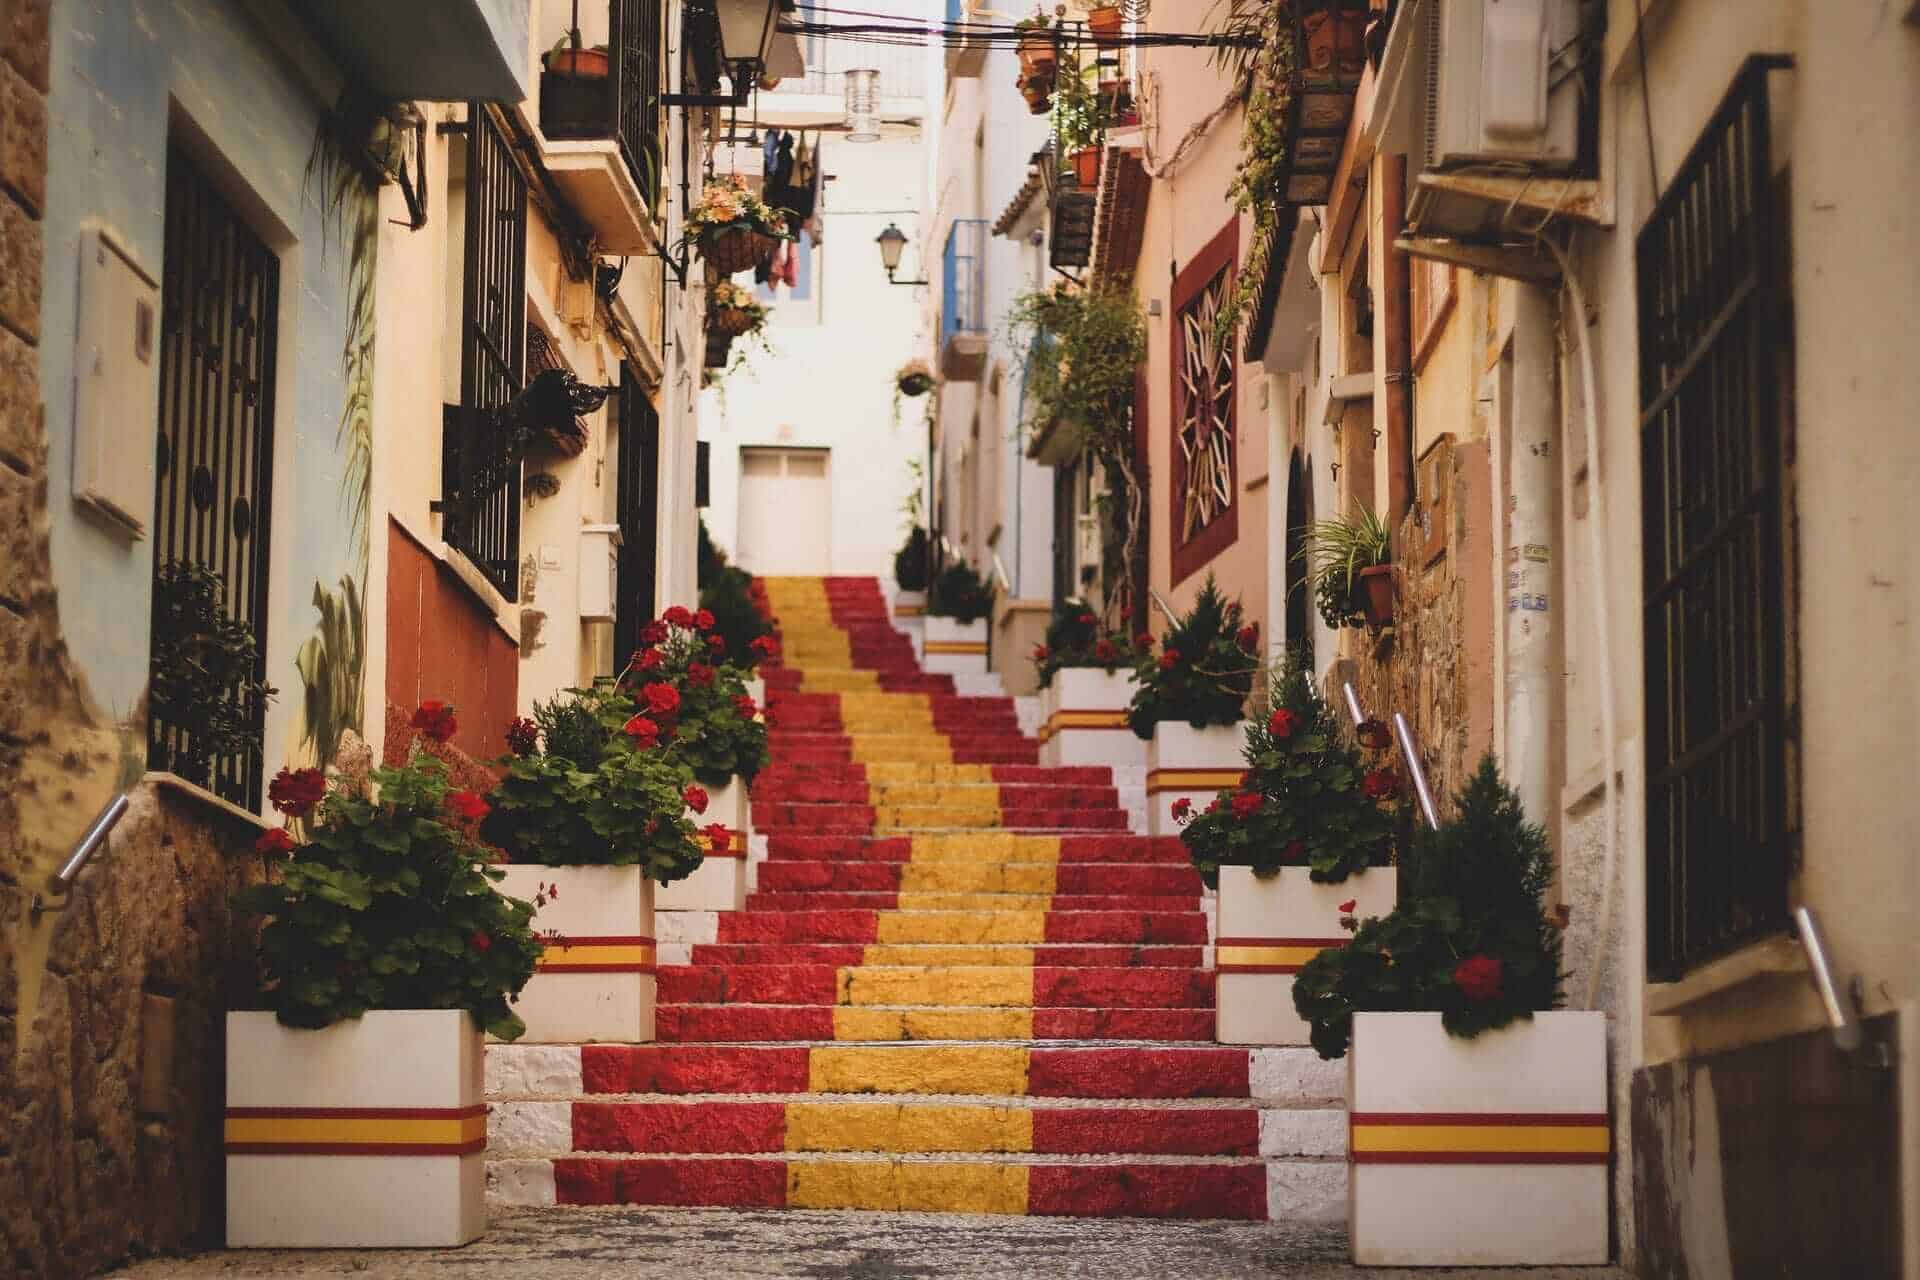 Steps in colors of Spain